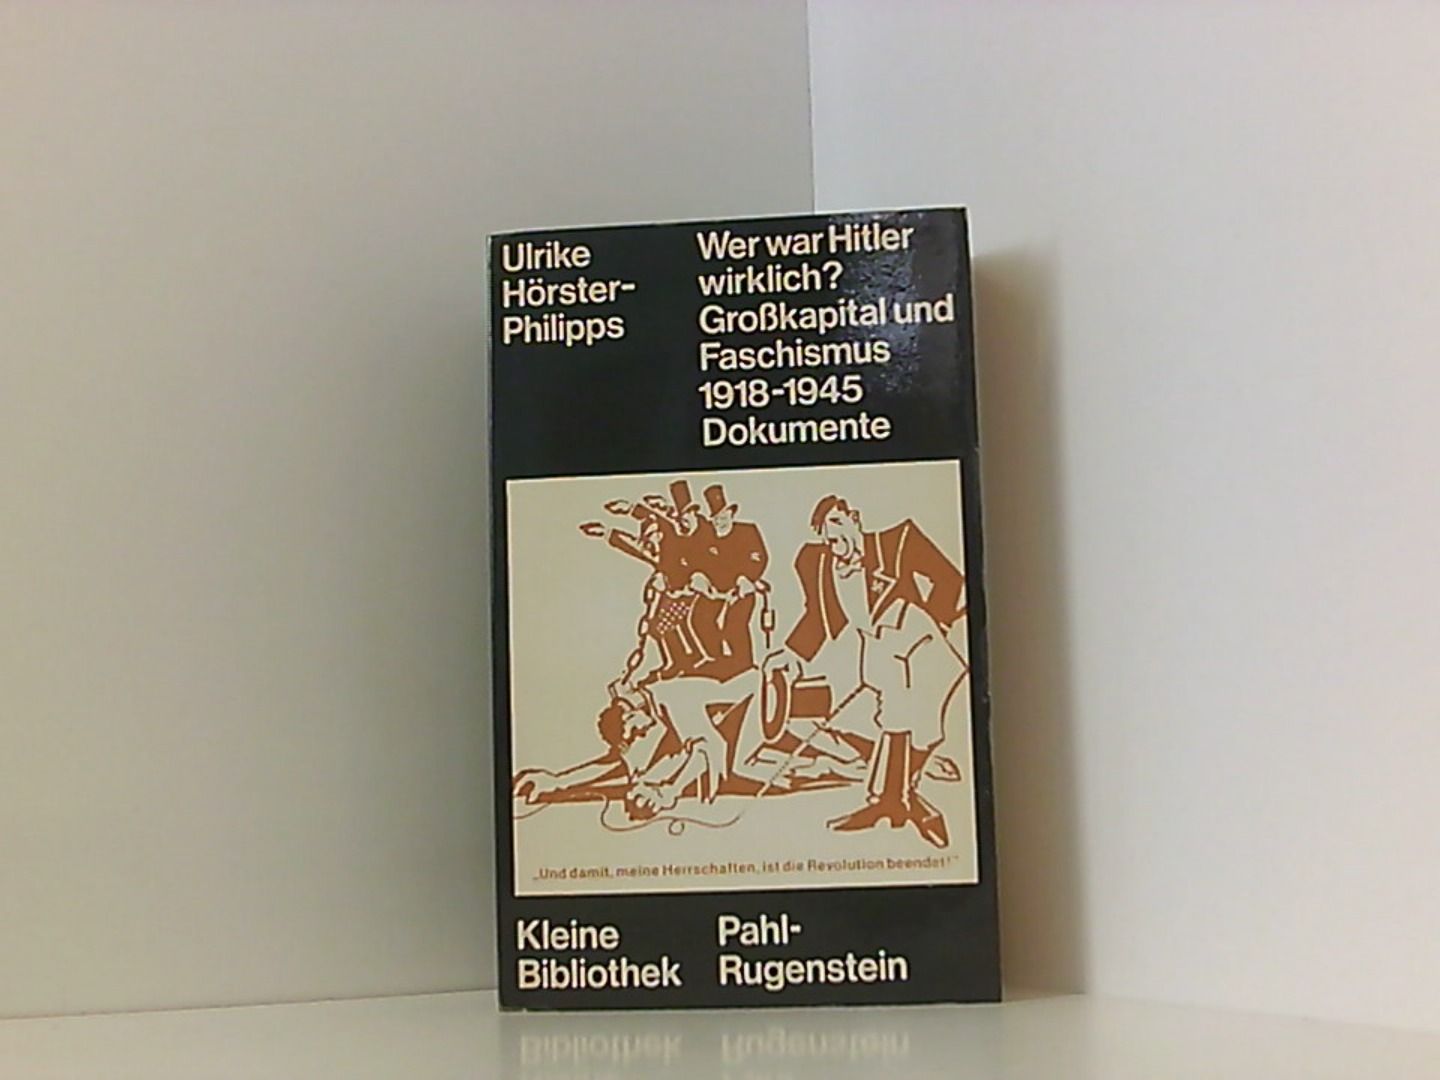 Großkapital und Faschismus 1918 - 1945. Wer war Hitler wirklich? Dokumente - Hörster-Philipps, Ulrike